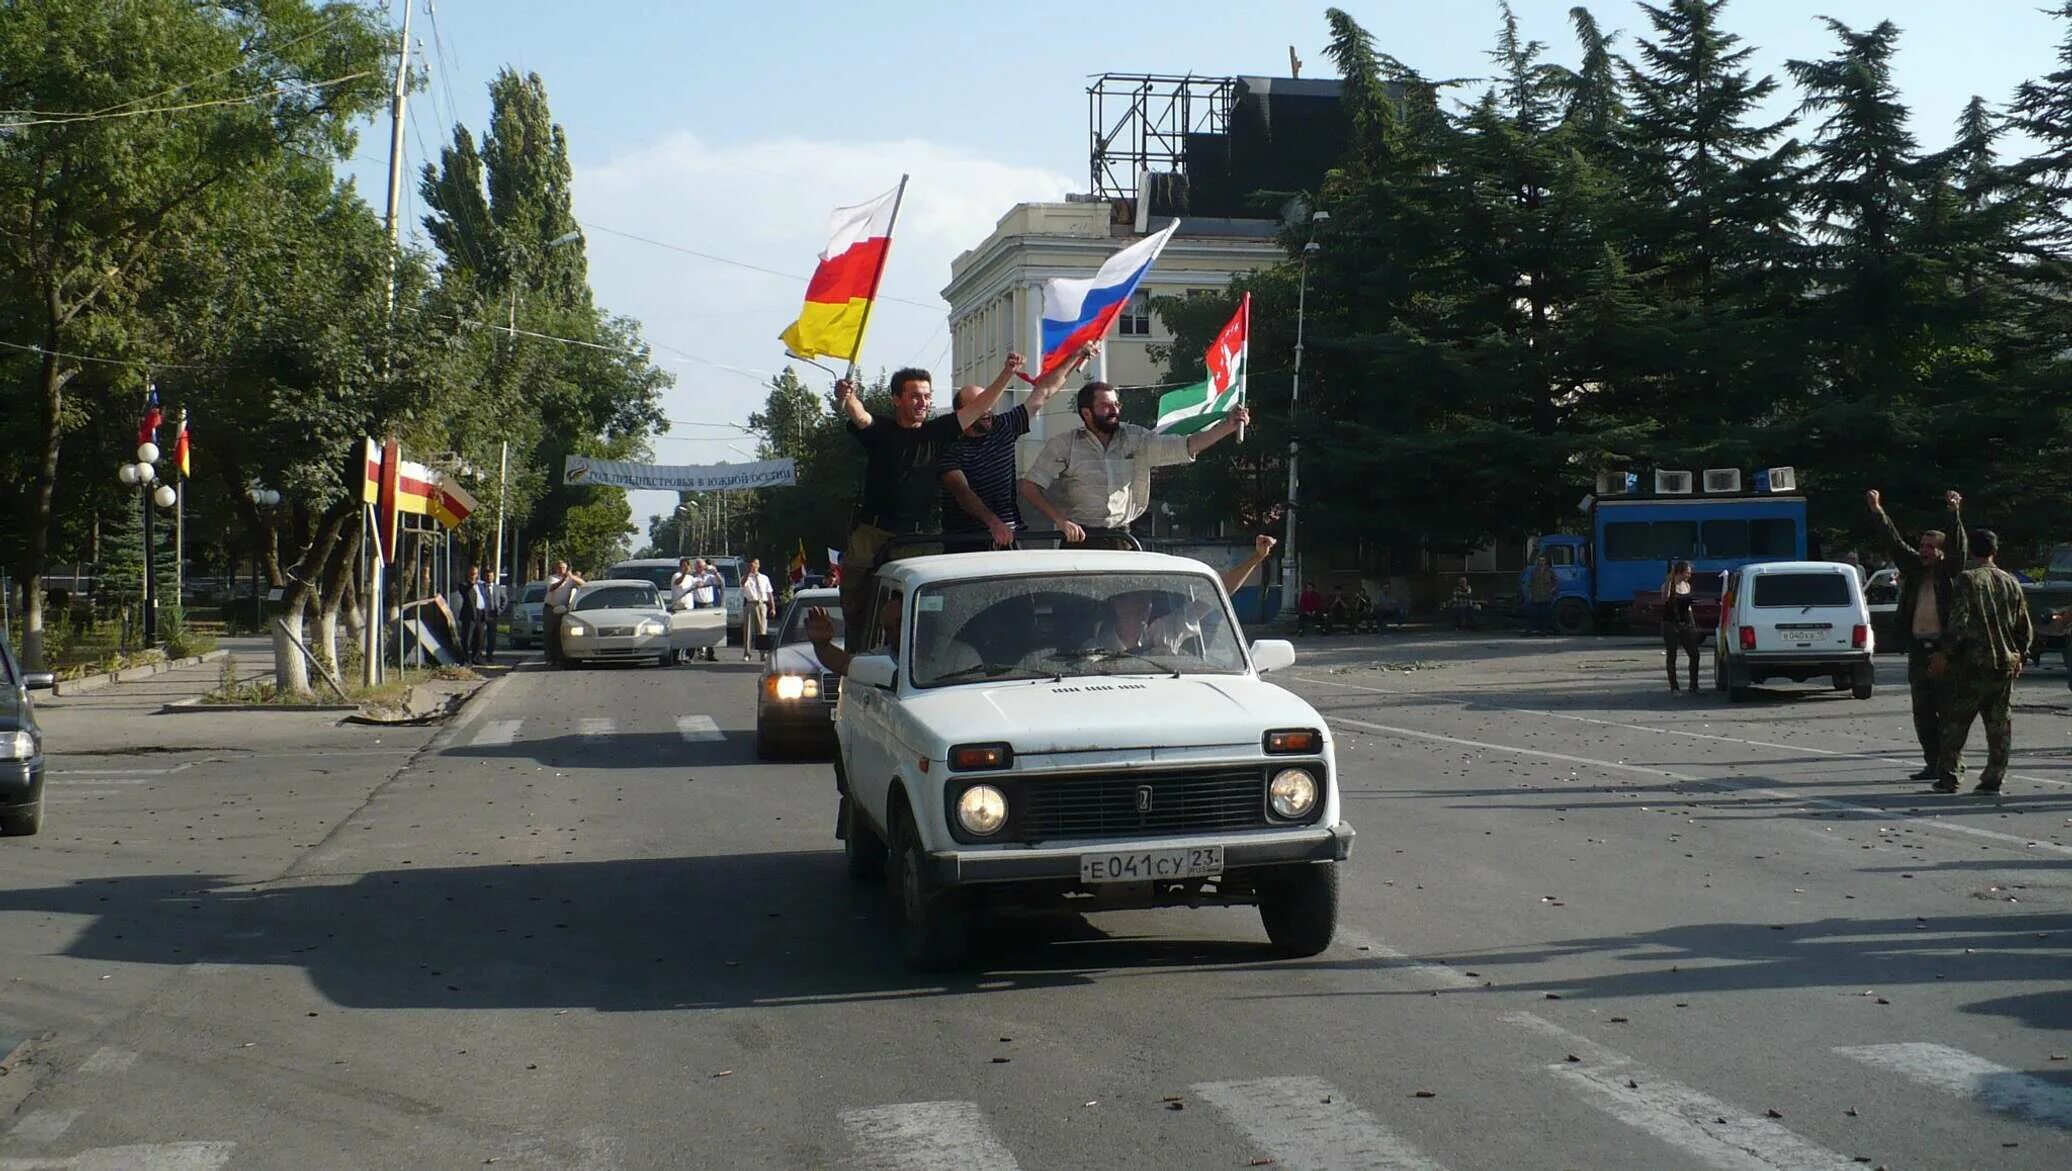 Объявления южная осетия. Независимость Абхазии и Южной Осетии 2008. Цхинвал август 2008. 26 Августа 2008 признание Россией независимости Южной Осетии и Абхазии.